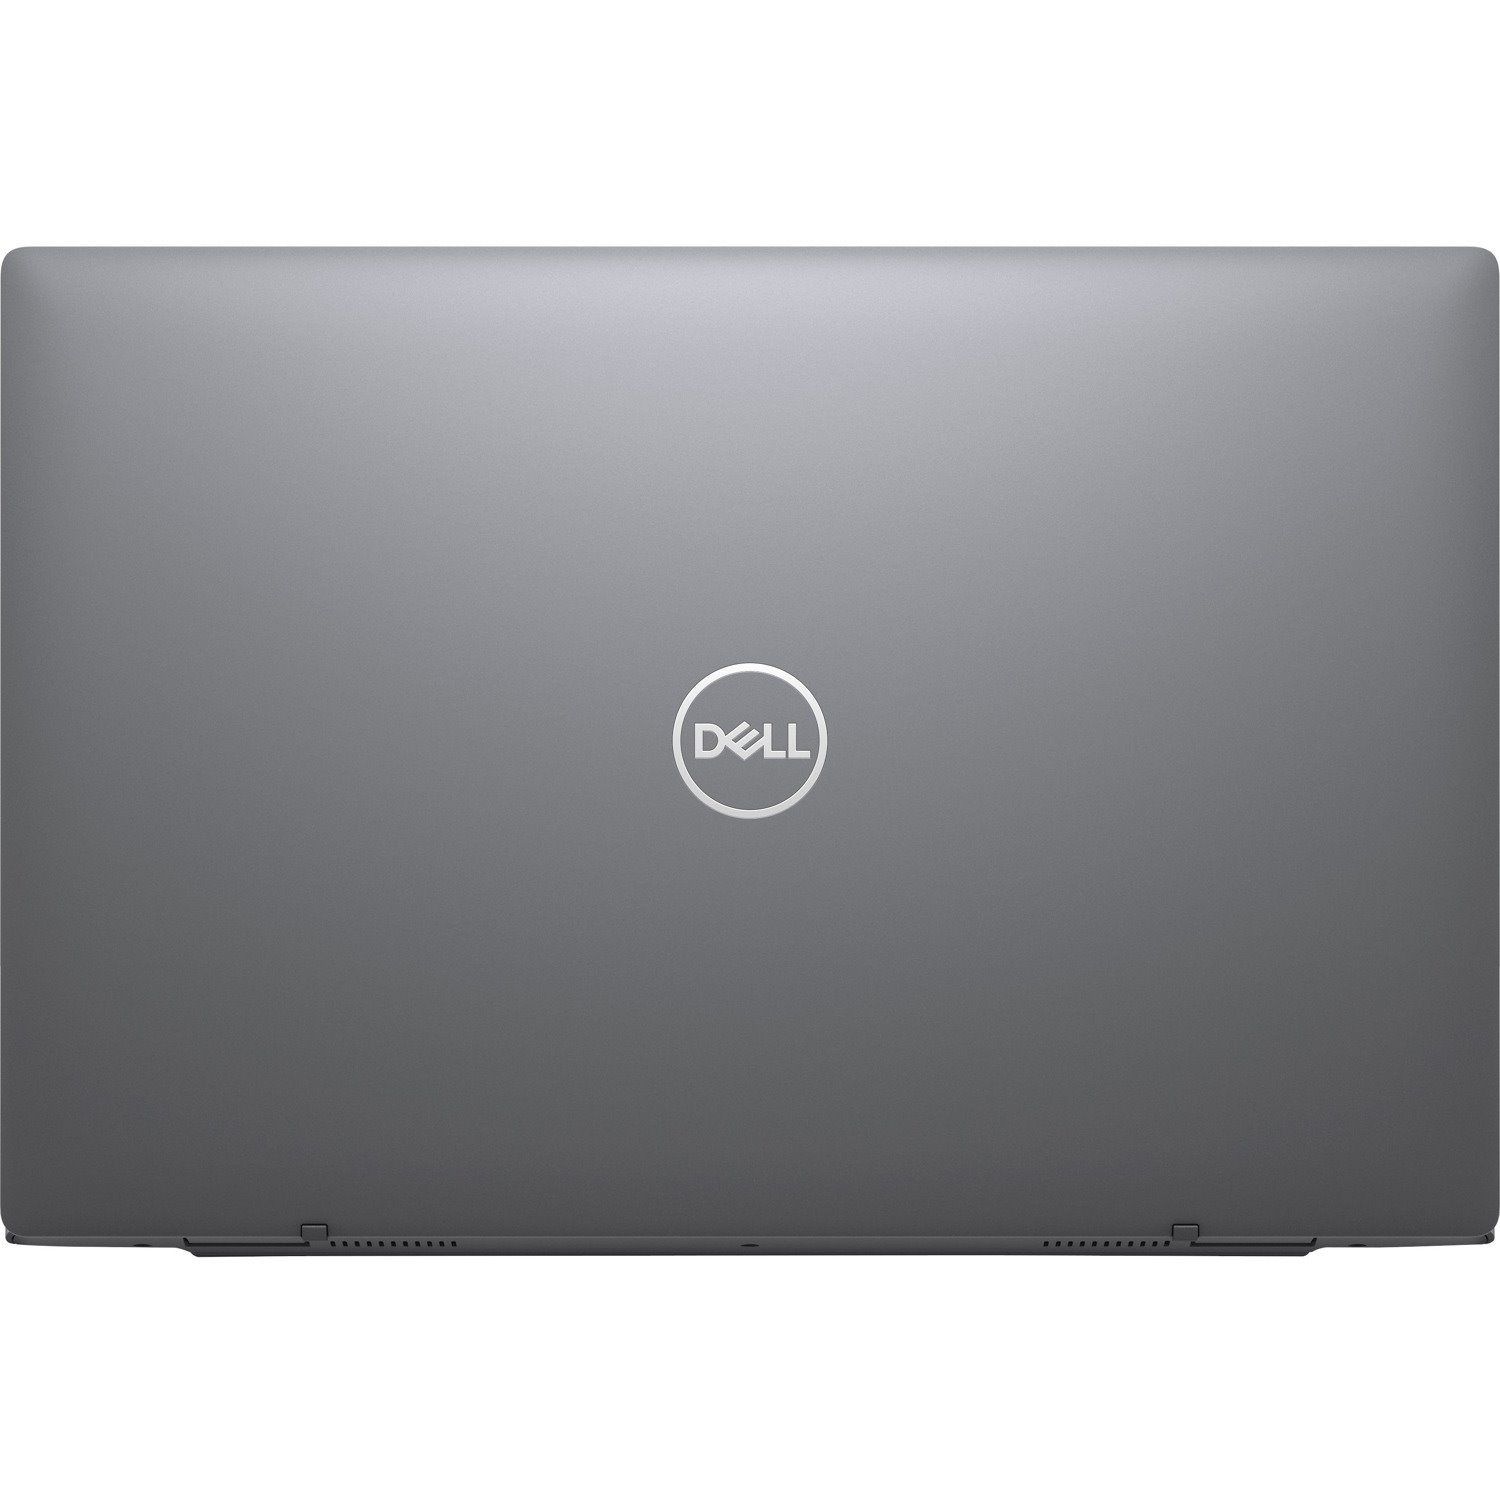 Dell Latitude 3000 3320 13.3" Notebook - Full HD - 1920 x 1080 - Intel Core i5 11th Gen i5-1135G7 Quad-core (4 Core) 2.40 GHz - 8 GB Total RAM - 256 GB SSD - Titan Gray